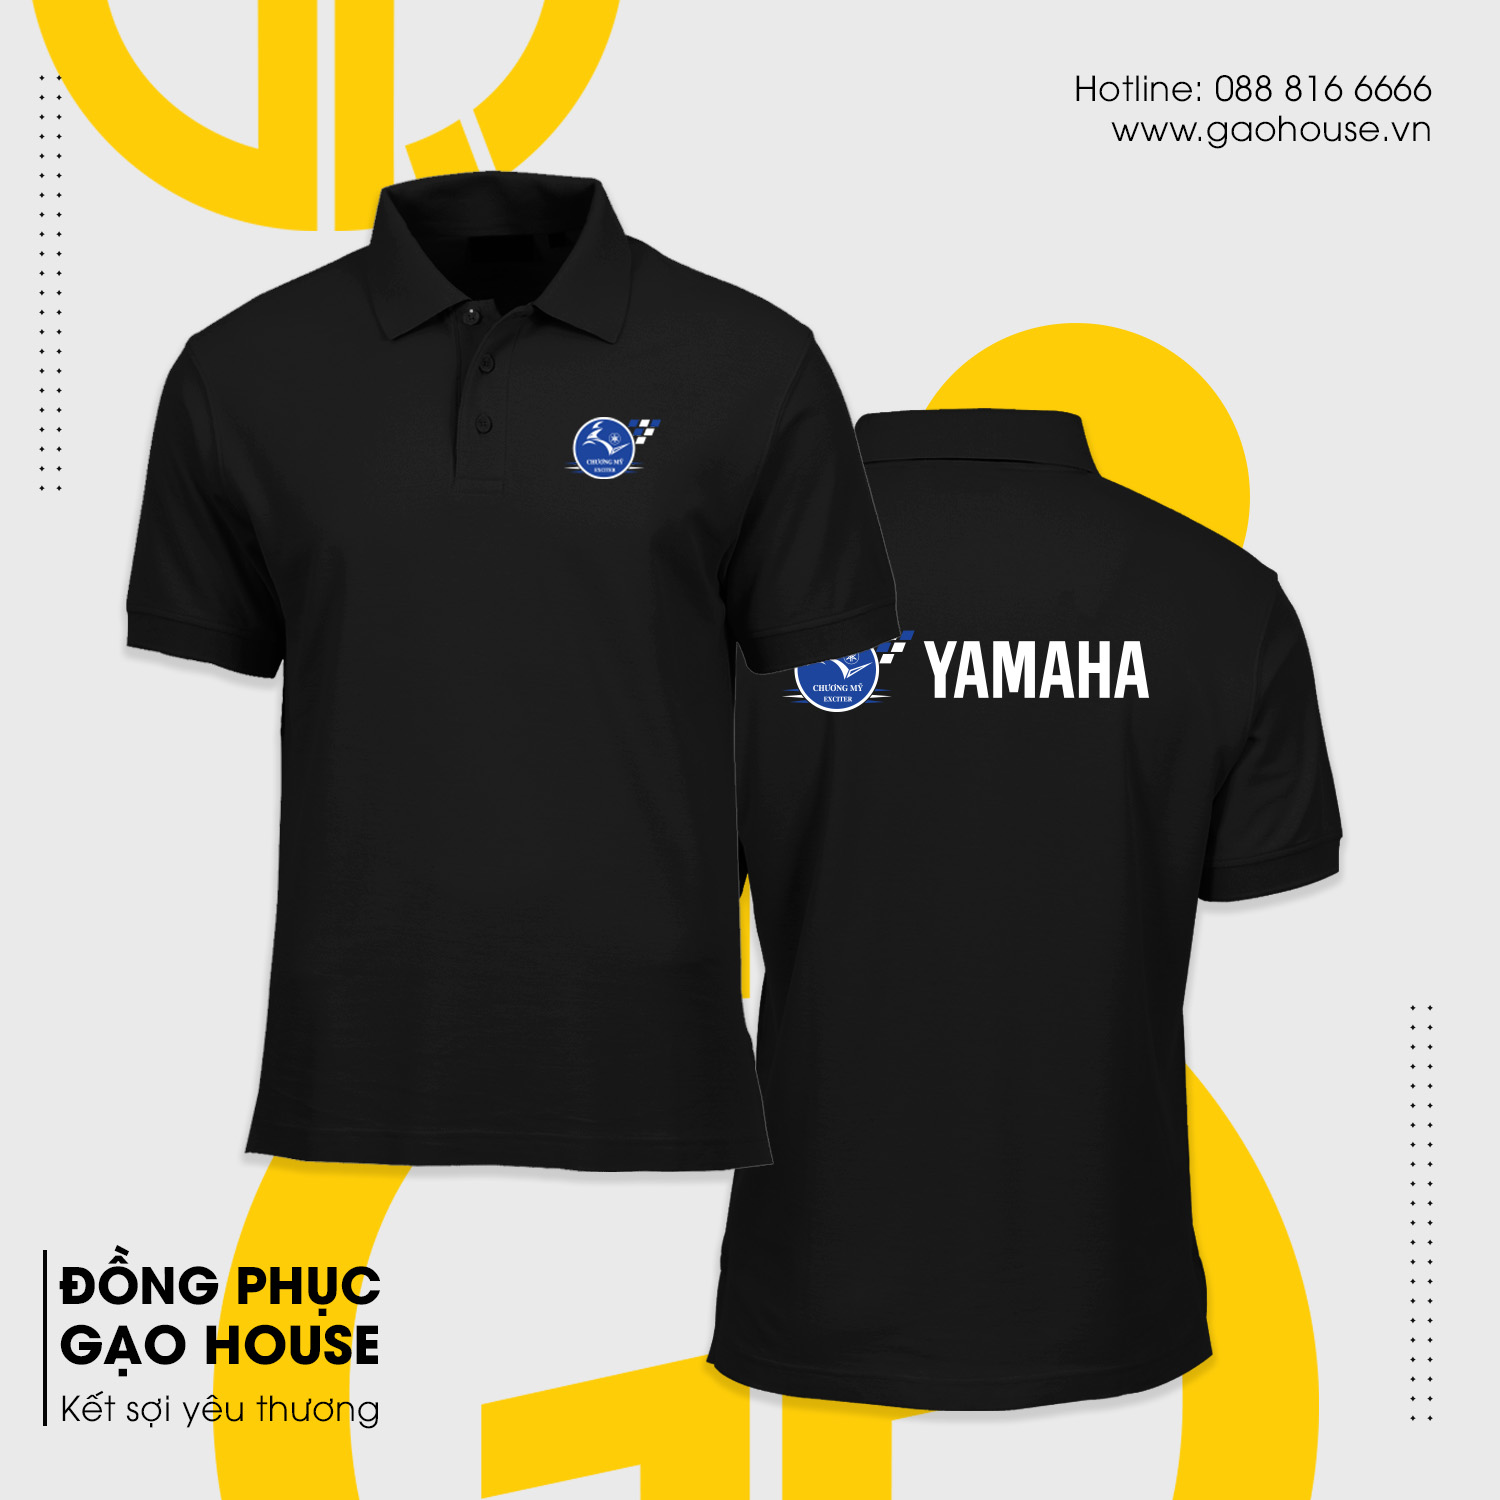 Bản mockup thiết kế đồng phục Yamaha